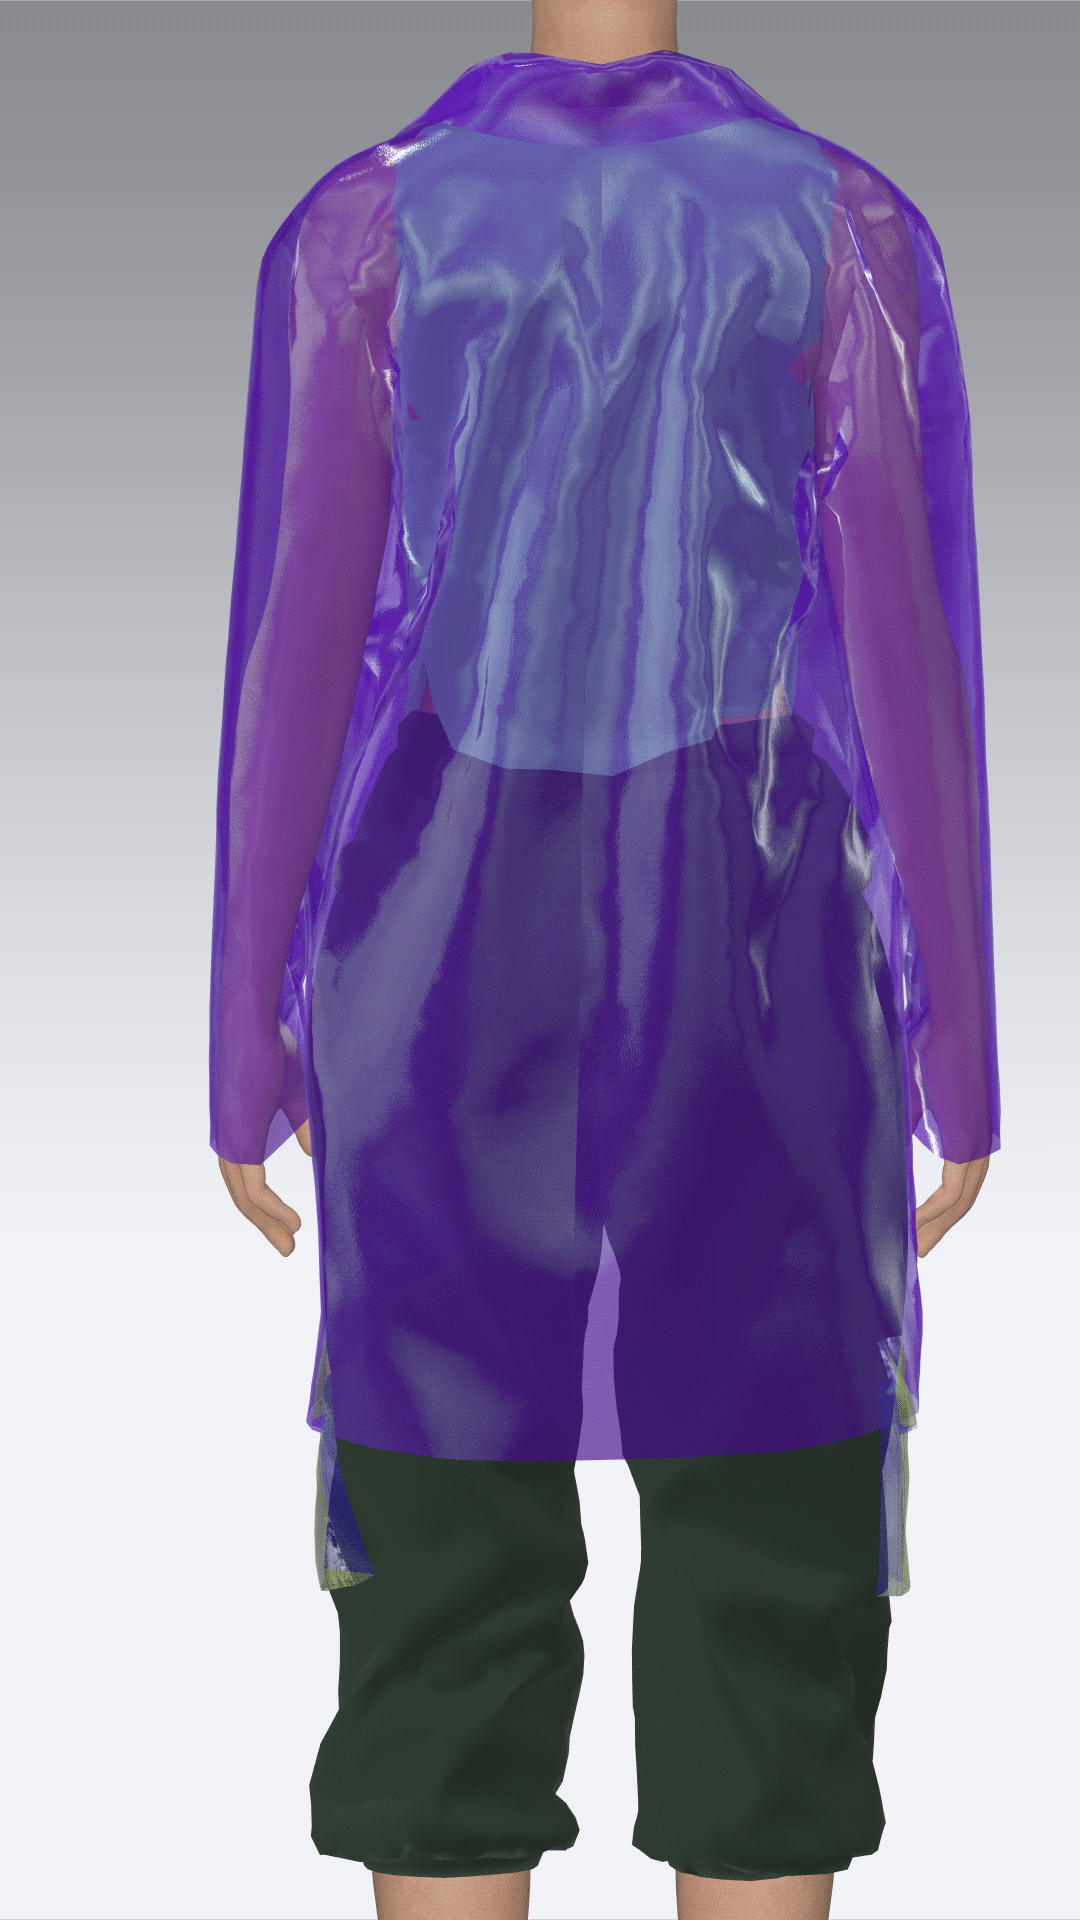 3dart 3DDesign antiutopia Browzwear Clo3d cyber futuristic marvelous designer neon plastic fabric 